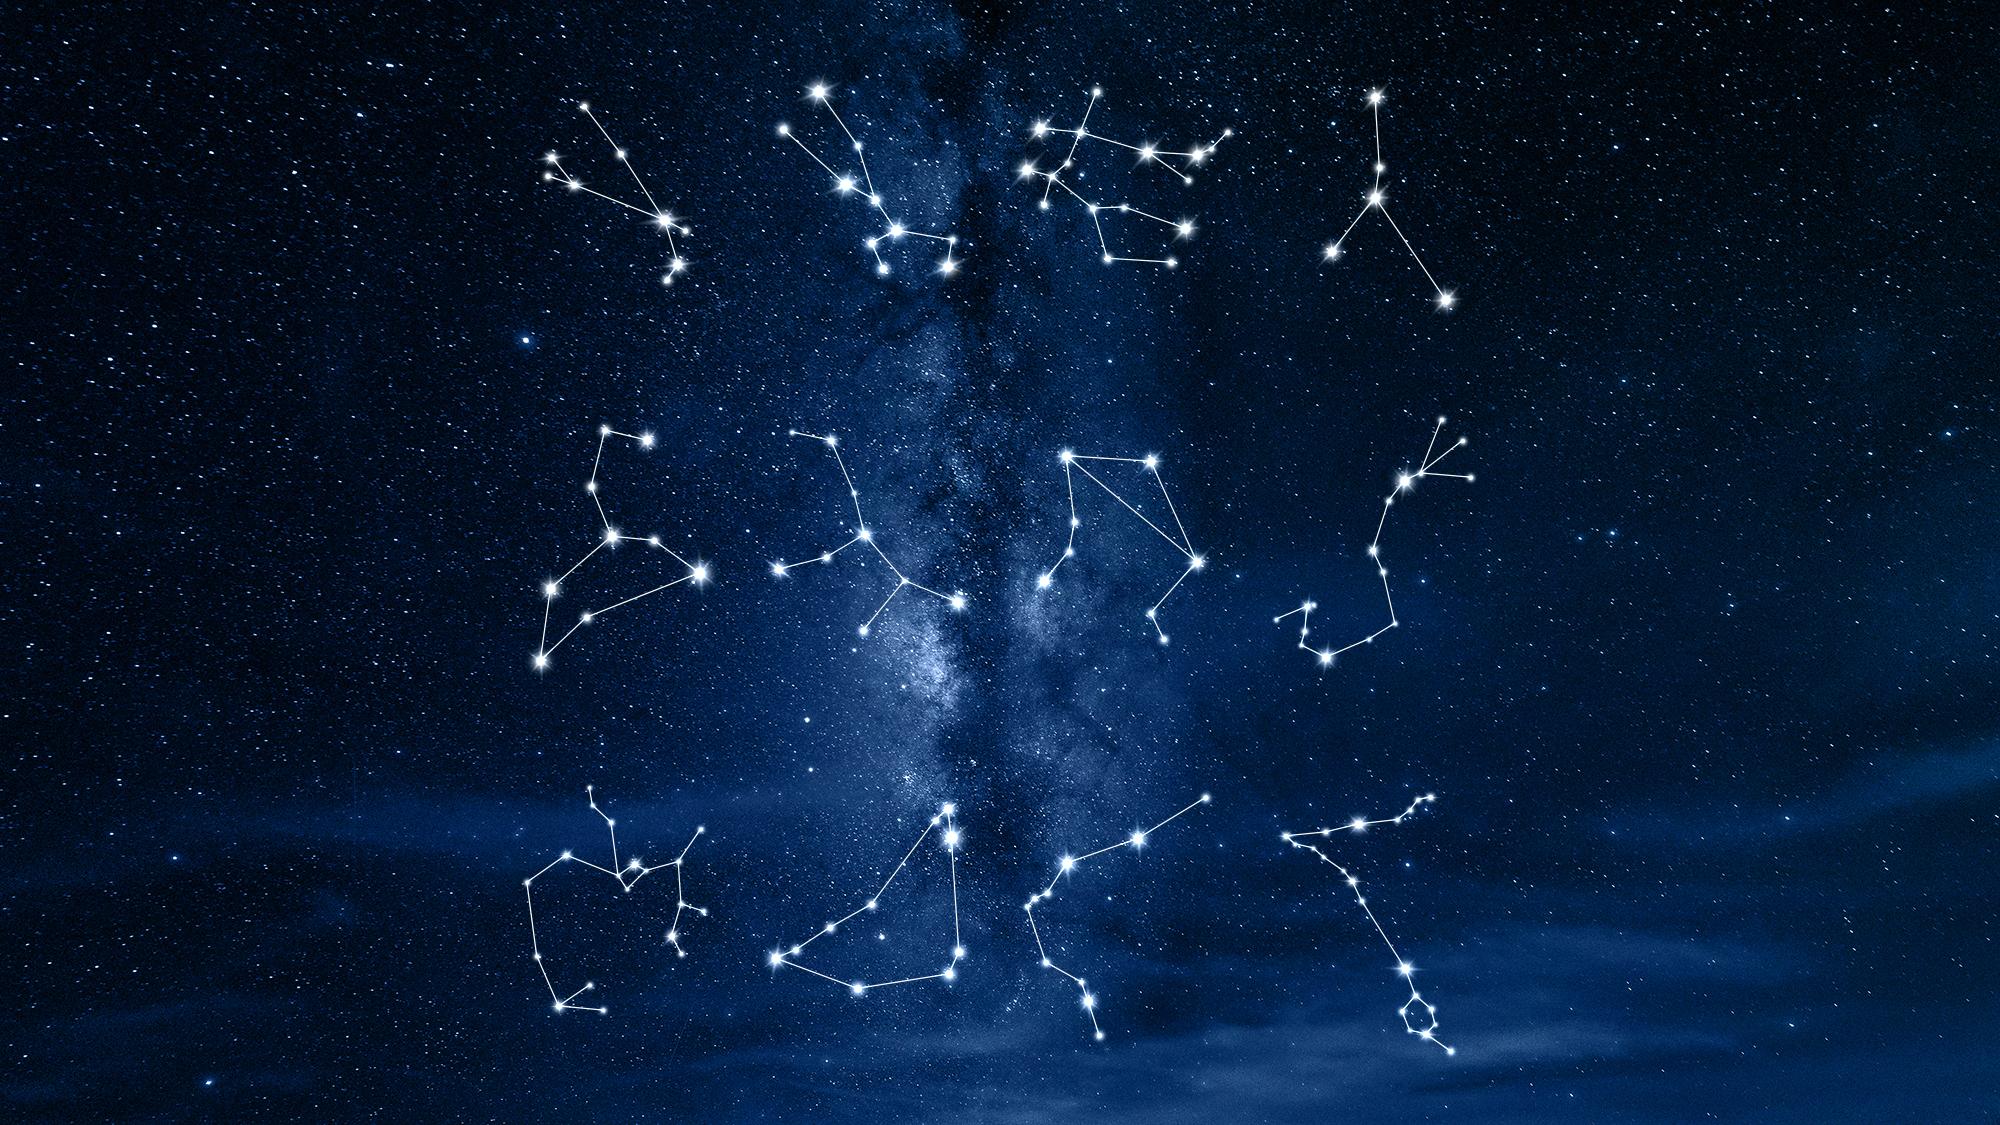 milky way galaxy night 2 Noćno nebo otkriva magične tajne horoskopskih znakova: Izaberite zvezdani prikaz i saznajte više o sebi